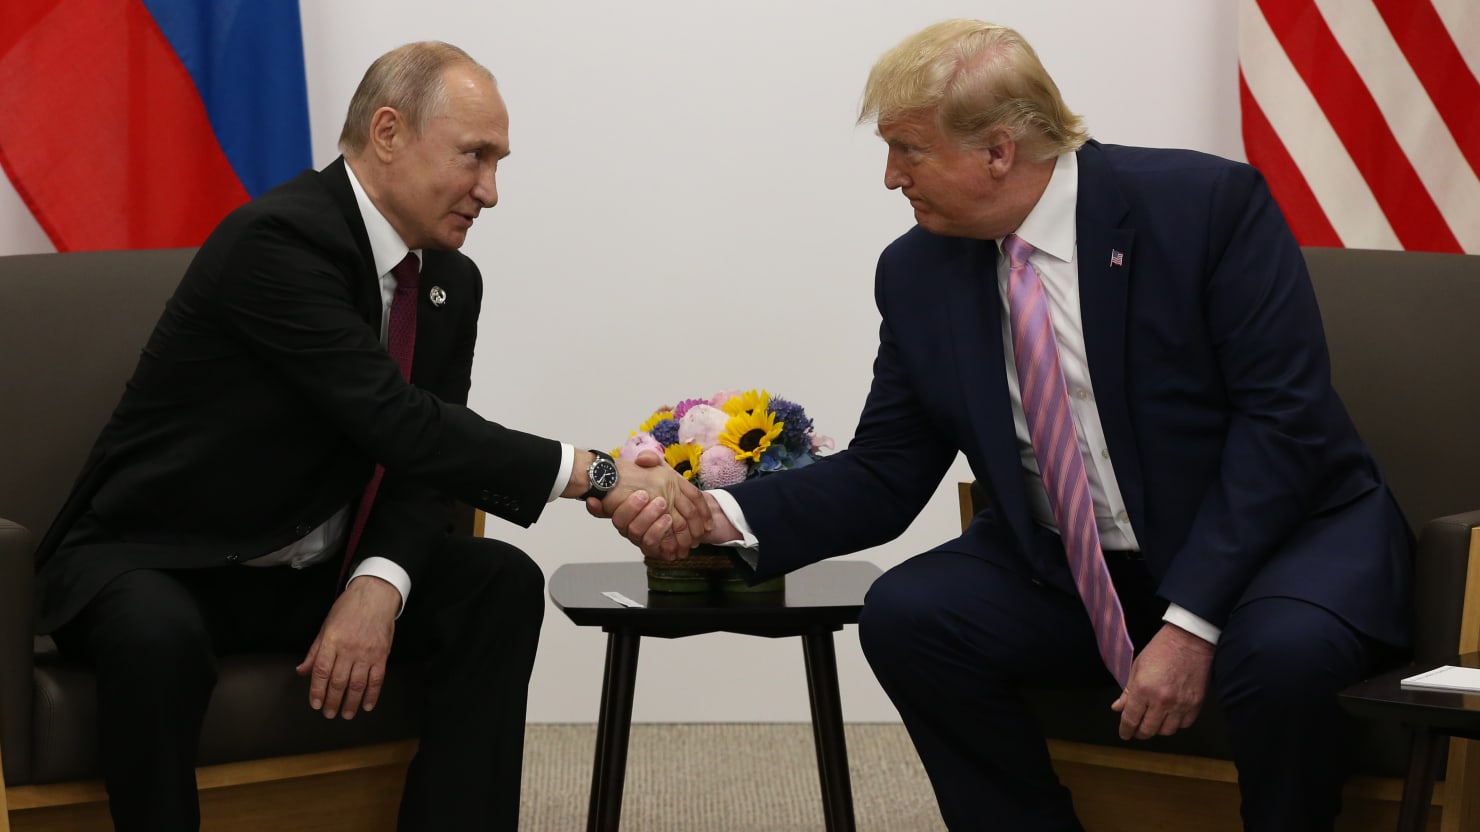 El festival de amor de Putin World’s con ‘Beaut’ Trump se vuelve más vergonzoso que nunca